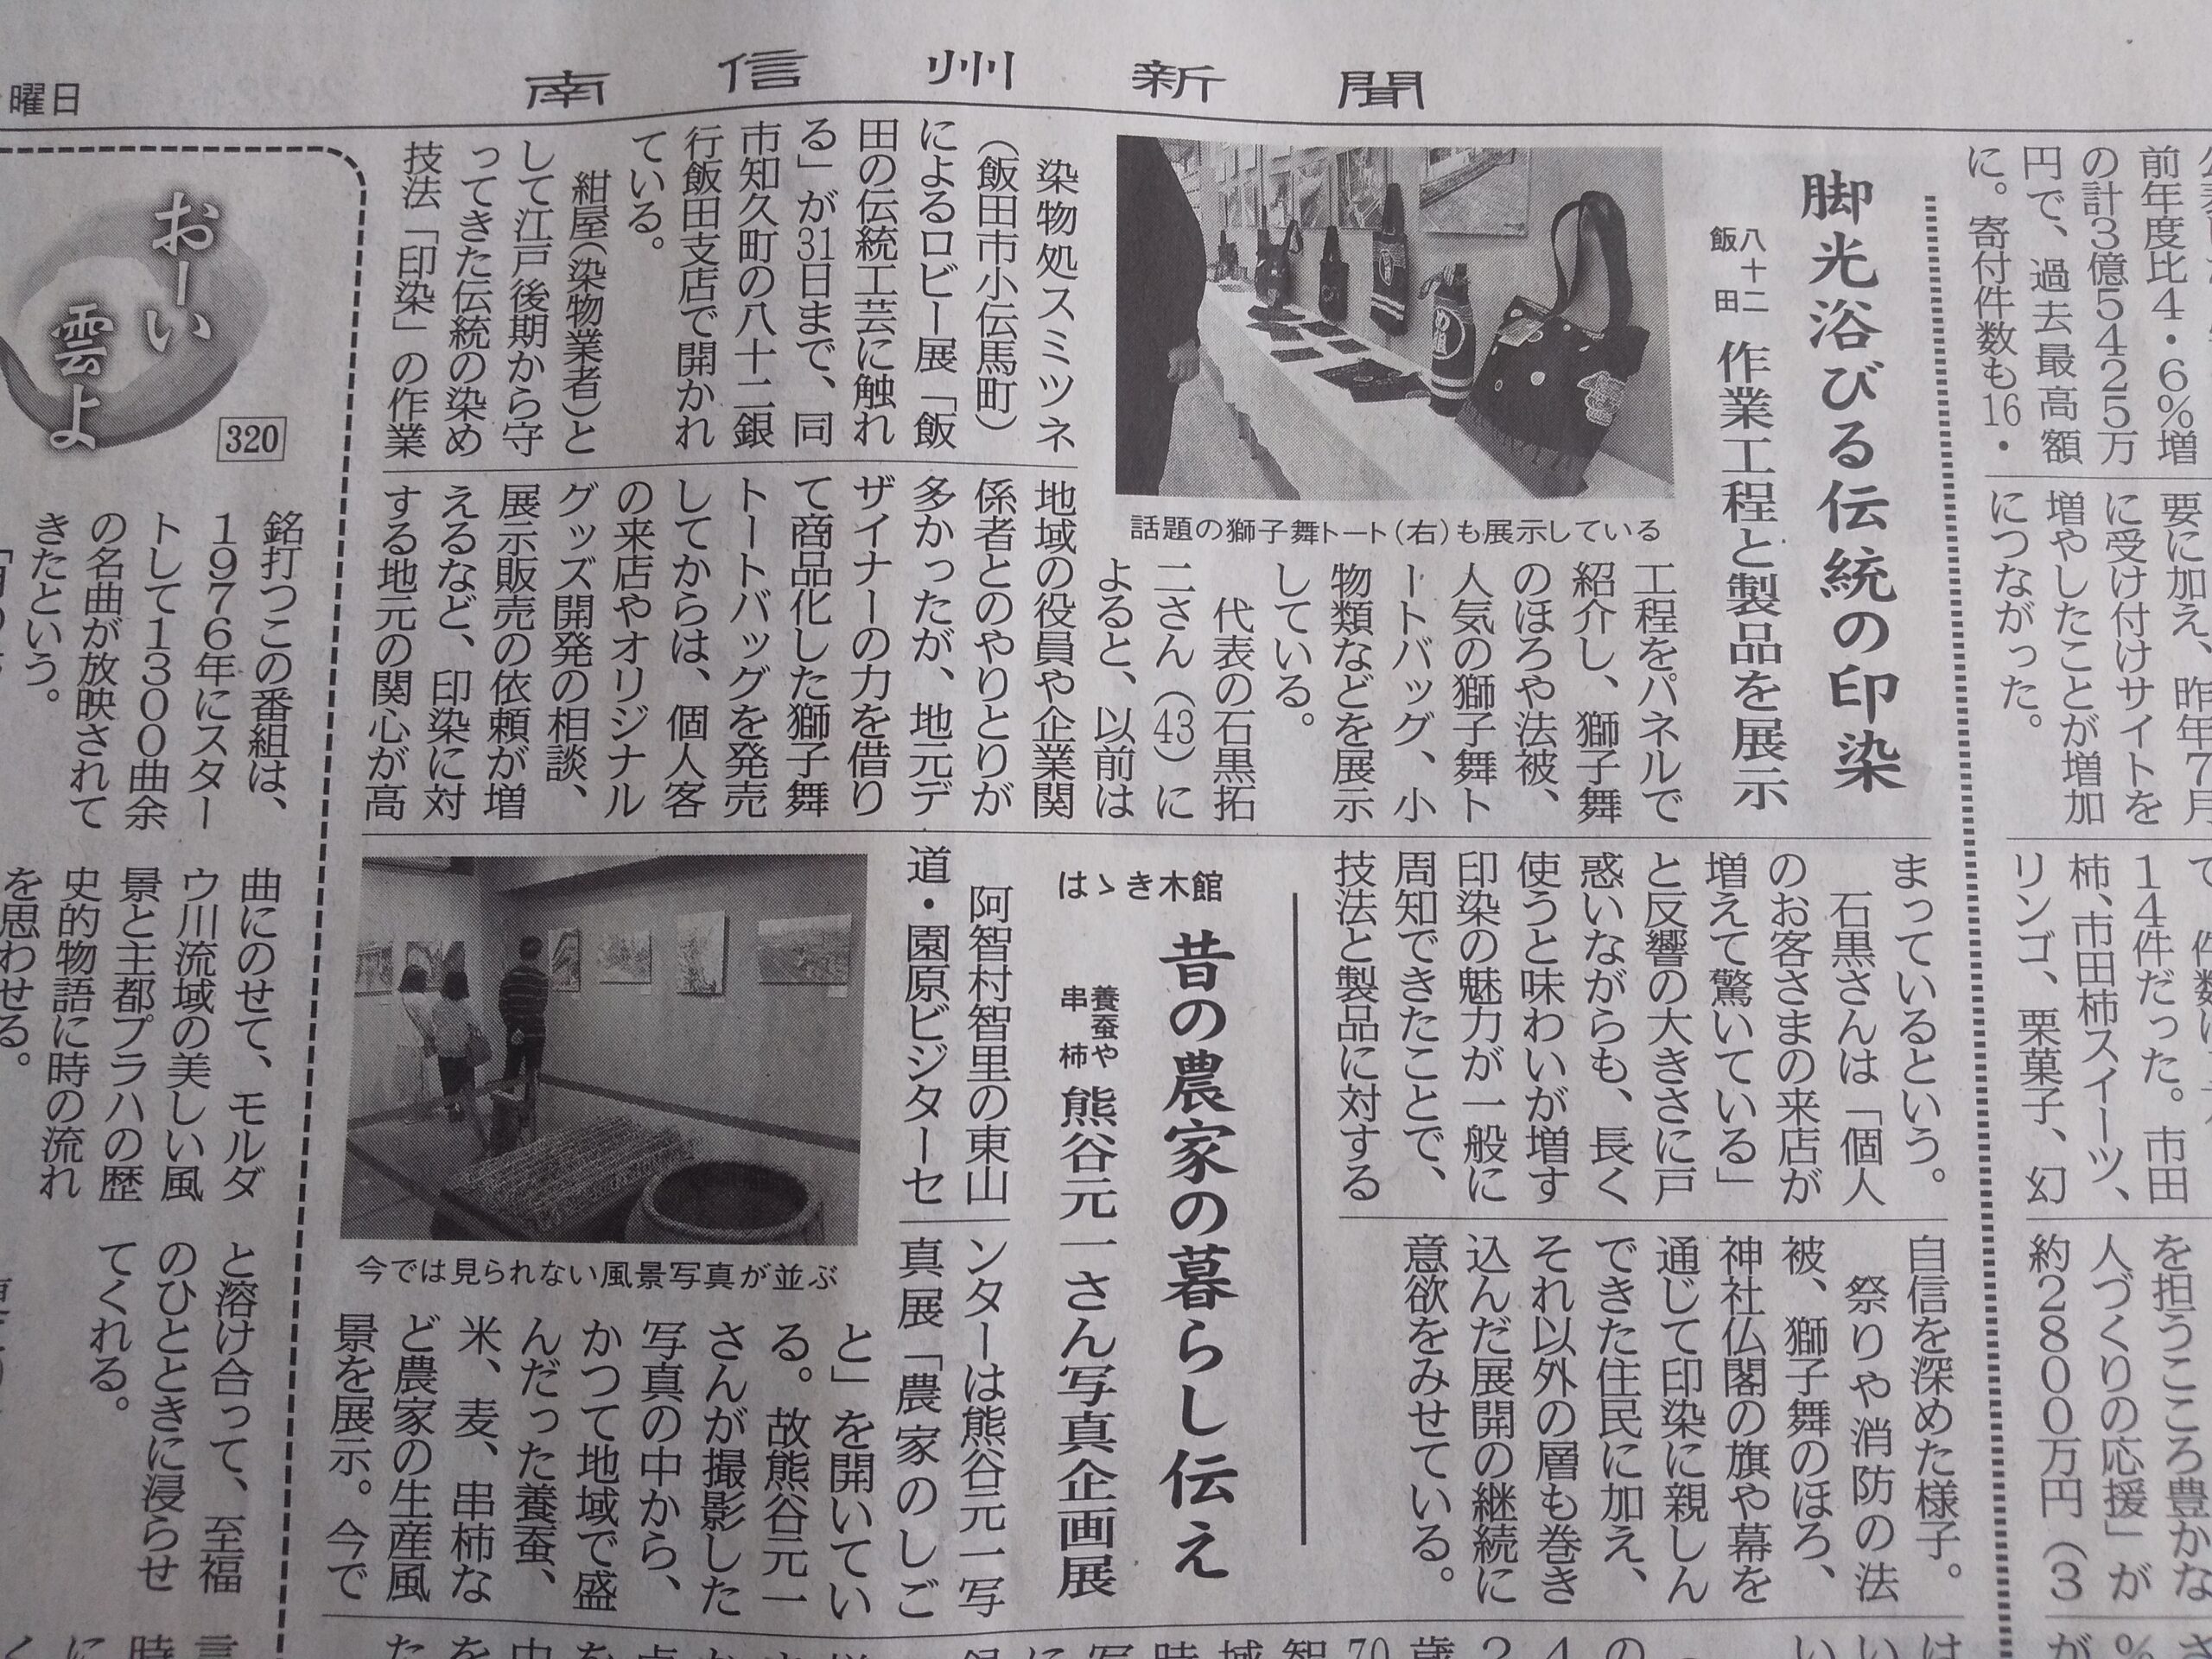 「南信州新聞社」さんで、「八十二銀行 飯田支店展示スペース　スミツネ展」が紹介をされました